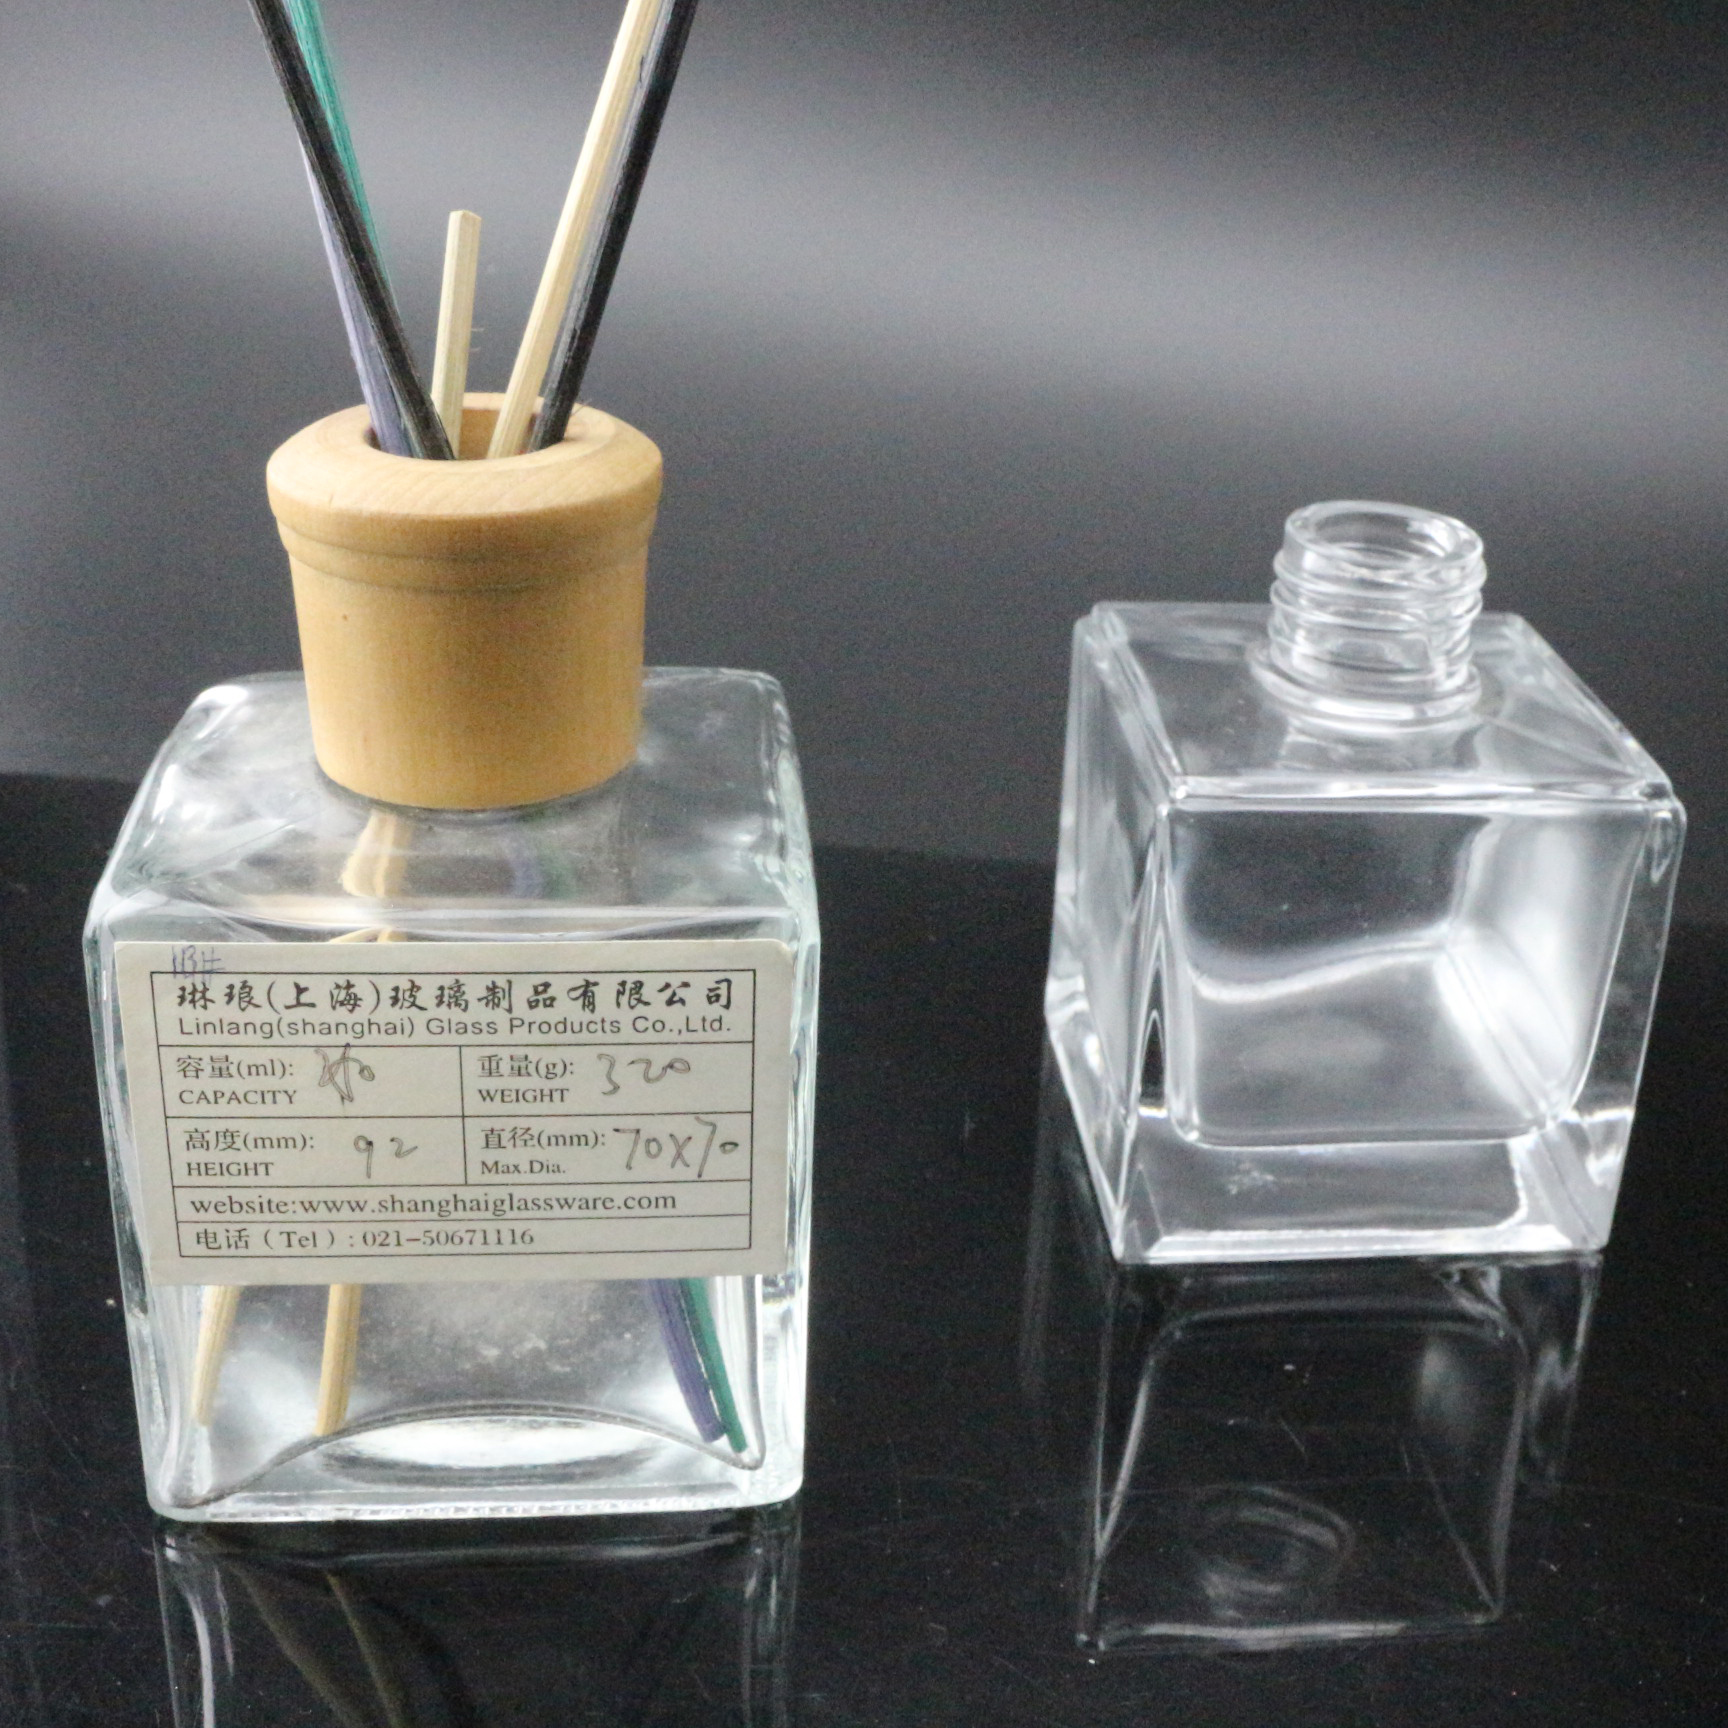 ขวดแก้ว Diffuser Fragrance สูง 9.6cm ขวด diffuser แก้ว 200ml ยกกำลังสอง